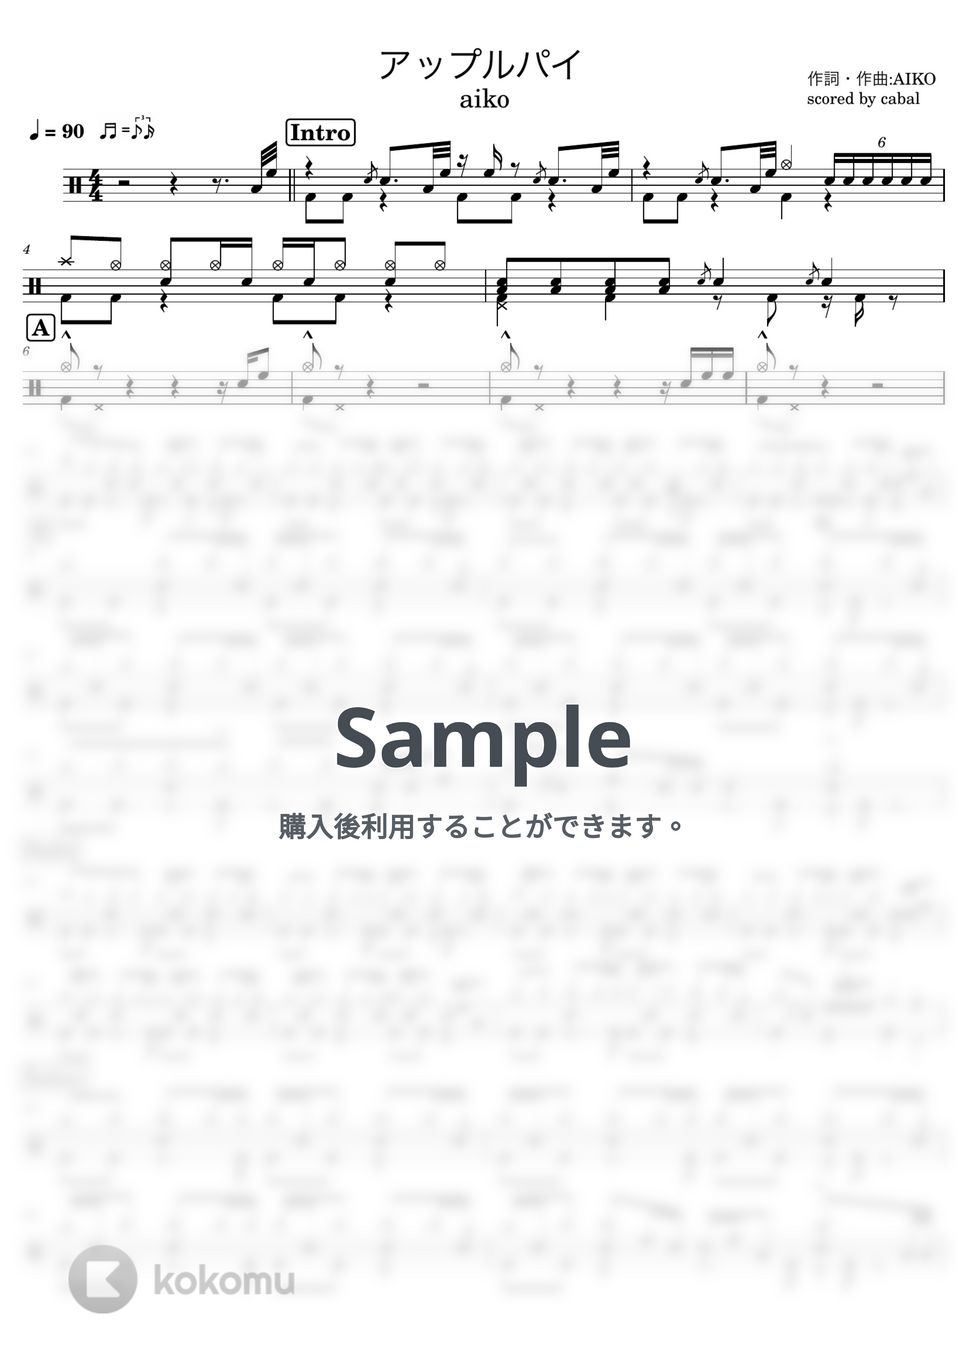 aiko - アップルパイ (ドラム譜面) by cabal